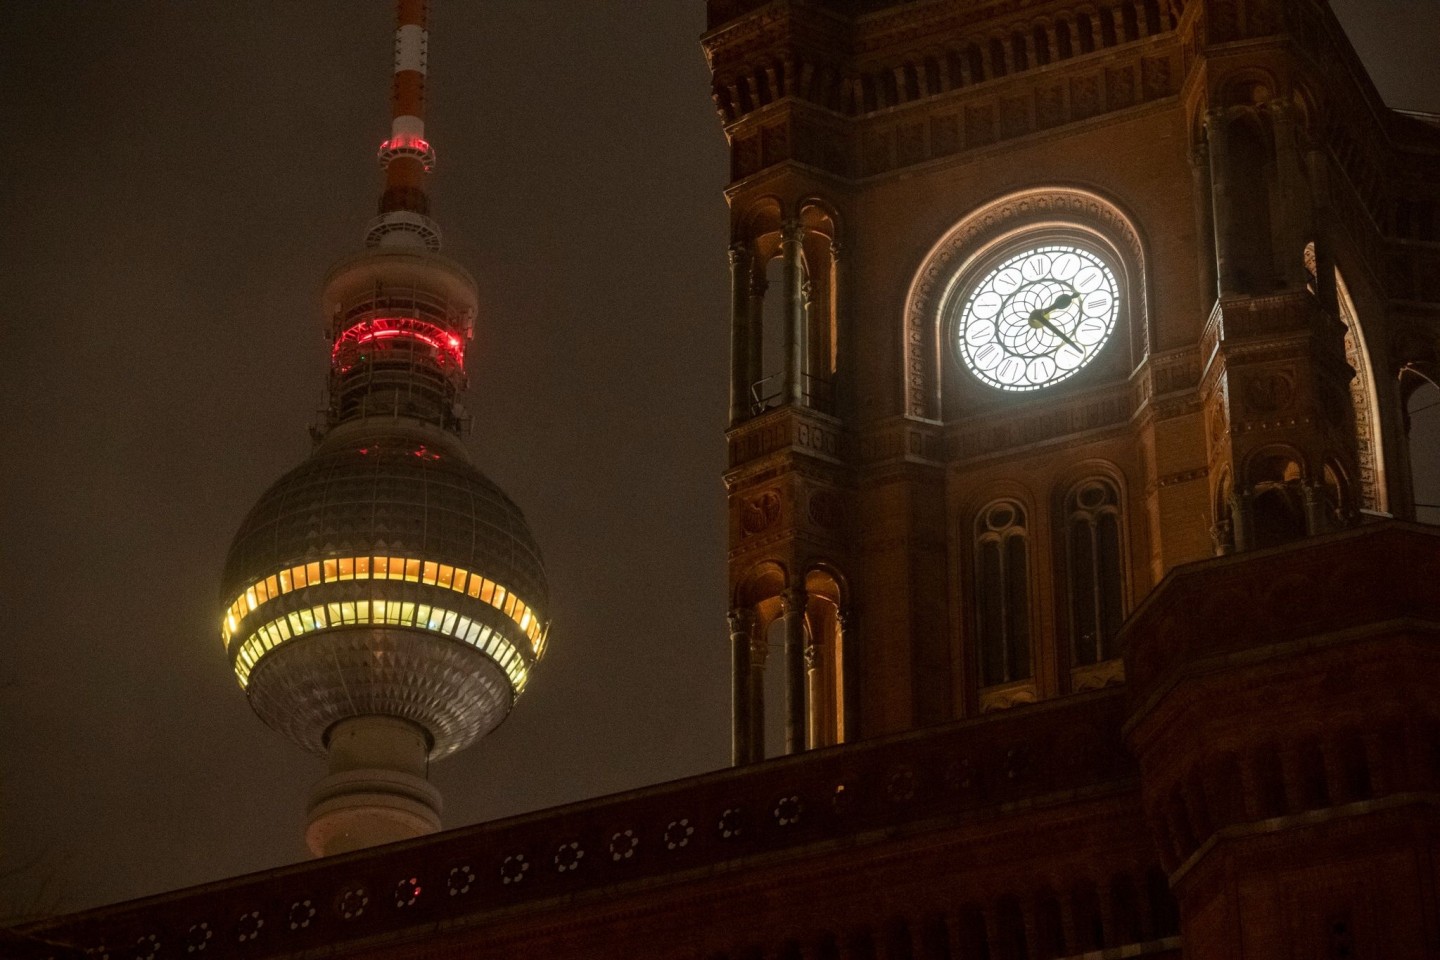 Die Uhr am Roten Rathaus in Berlin zeigt die Uhrzeit an. Zum Beginn der Sommerzeit wurden die Uhren in der Nacht um eine Stunde vorgestellt.